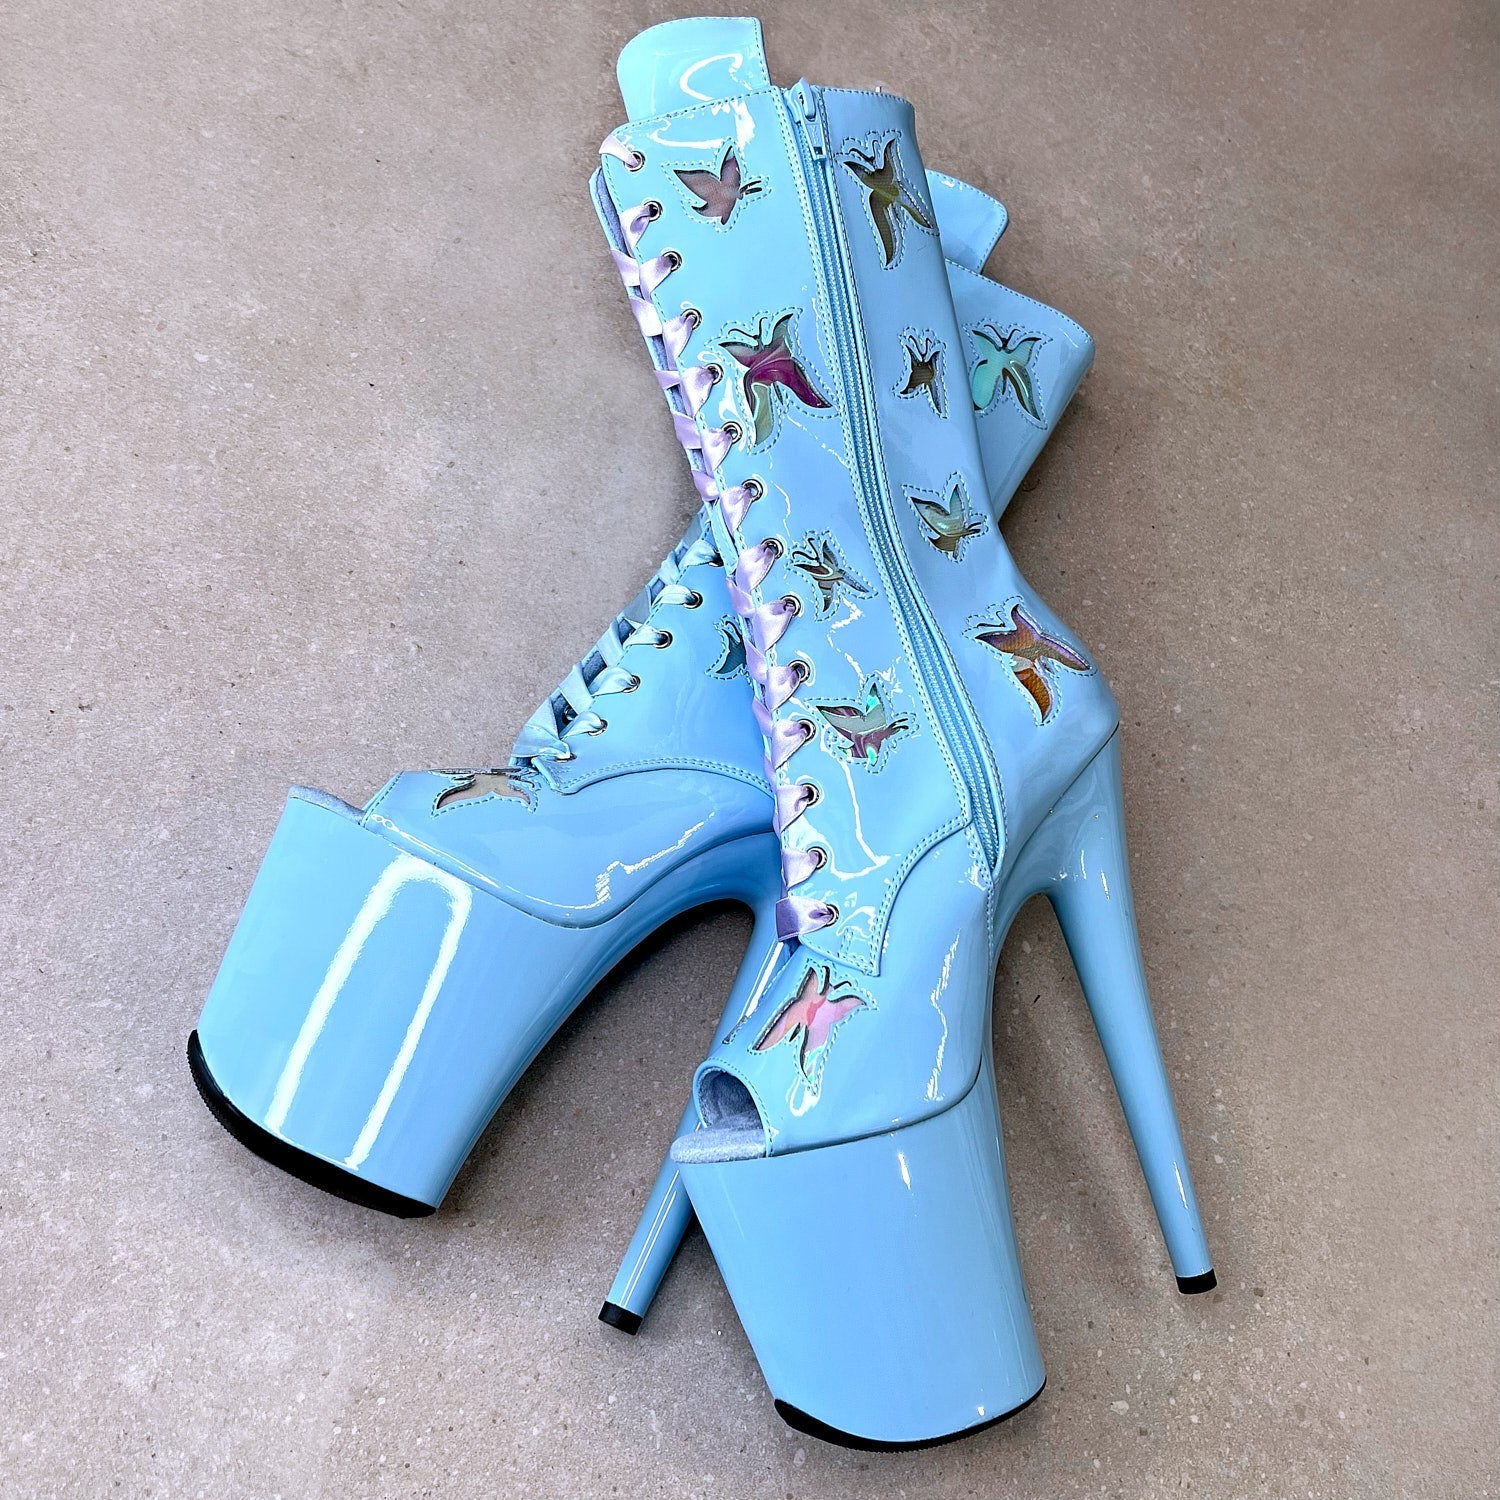 Butterfly Boot Blue Open Toe - 8INCH, stripper shoe, stripper heel, pole heel, not a pleaser, platform, dancer, pole dance, floor work